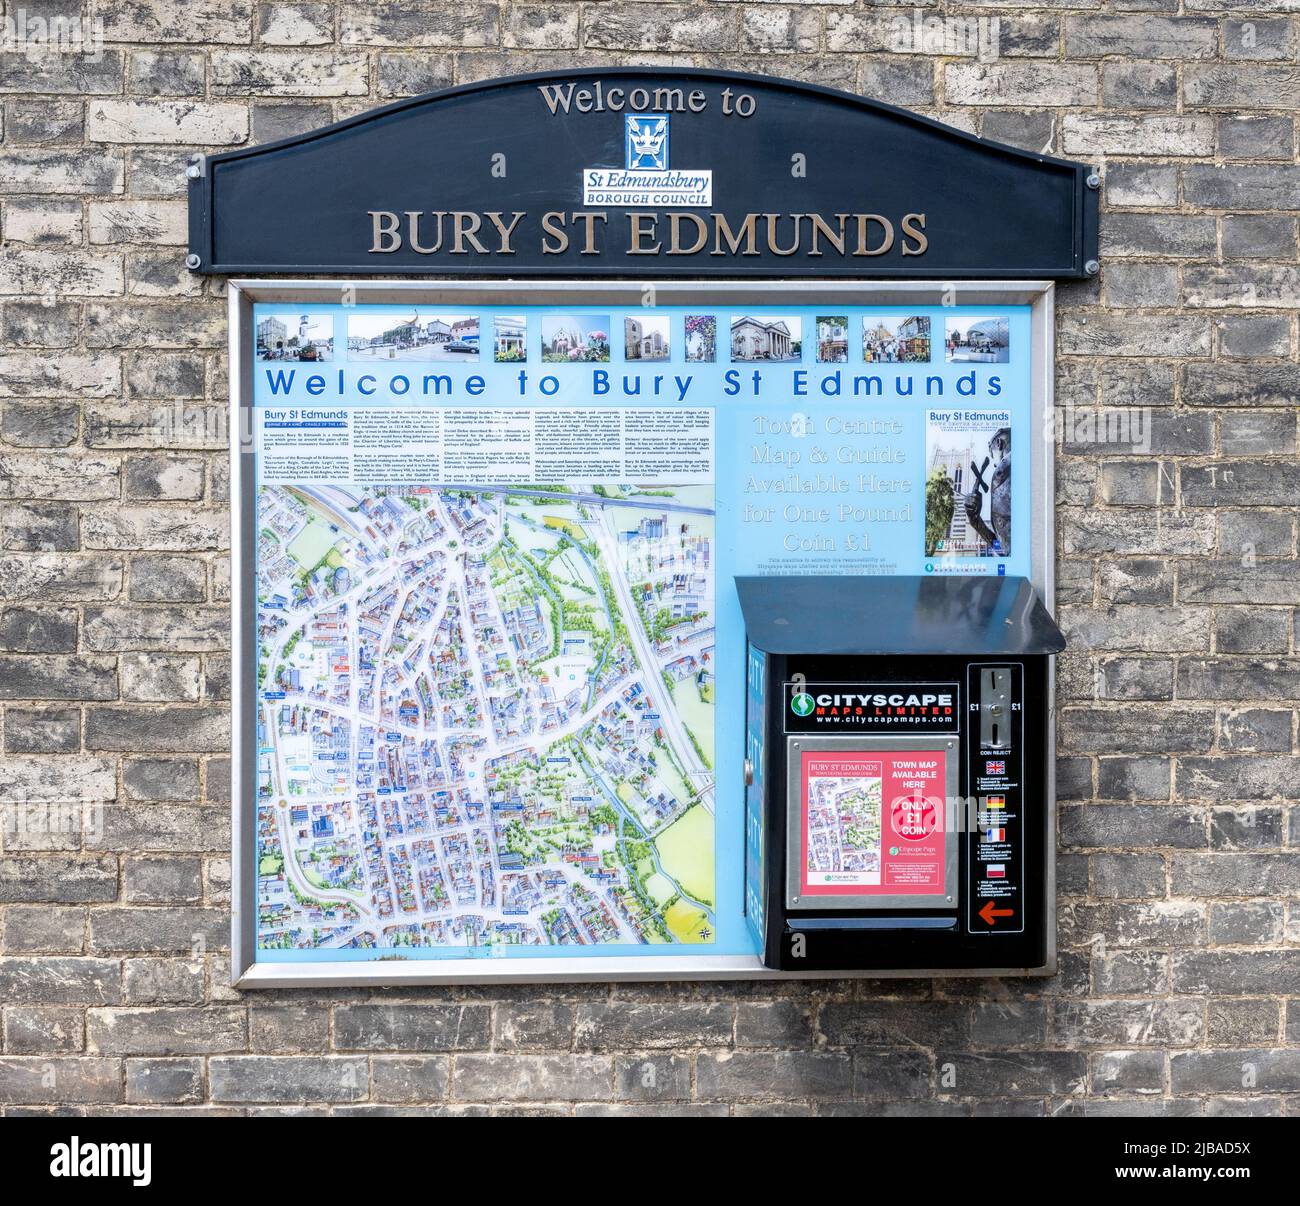 Benvenuti al segno turistico di Bury St Edmunds e mappa fornita dal paesaggio urbano Bury St Edmunds, Suffolk, Inghilterra, Regno Unito Foto Stock